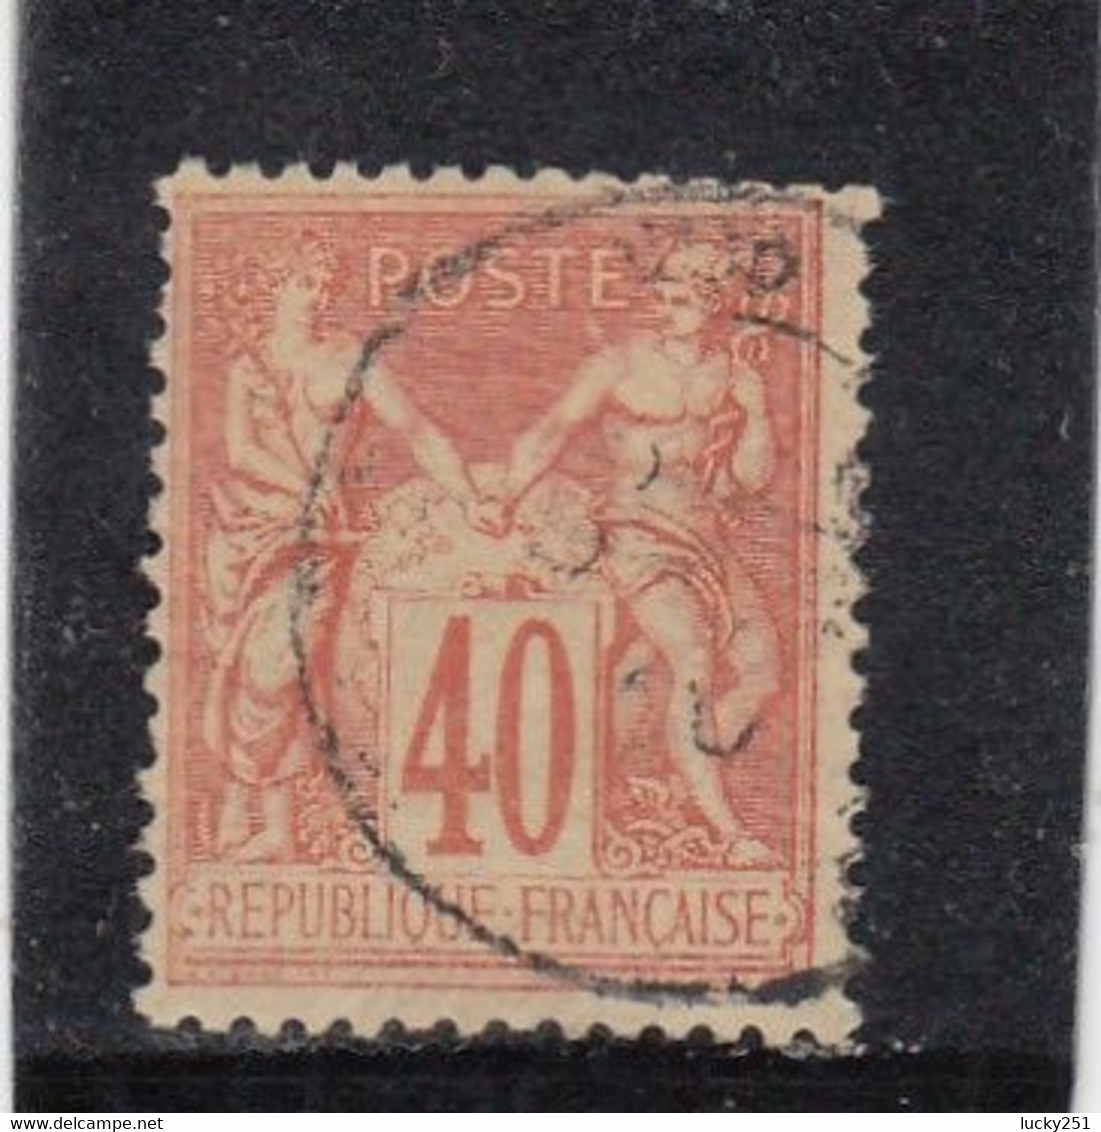 France - Année 1876/98 - Type Sage - Type II - N°YT 94 - 40c Orange - Oblitération CàD - 1876-1898 Sage (Type II)